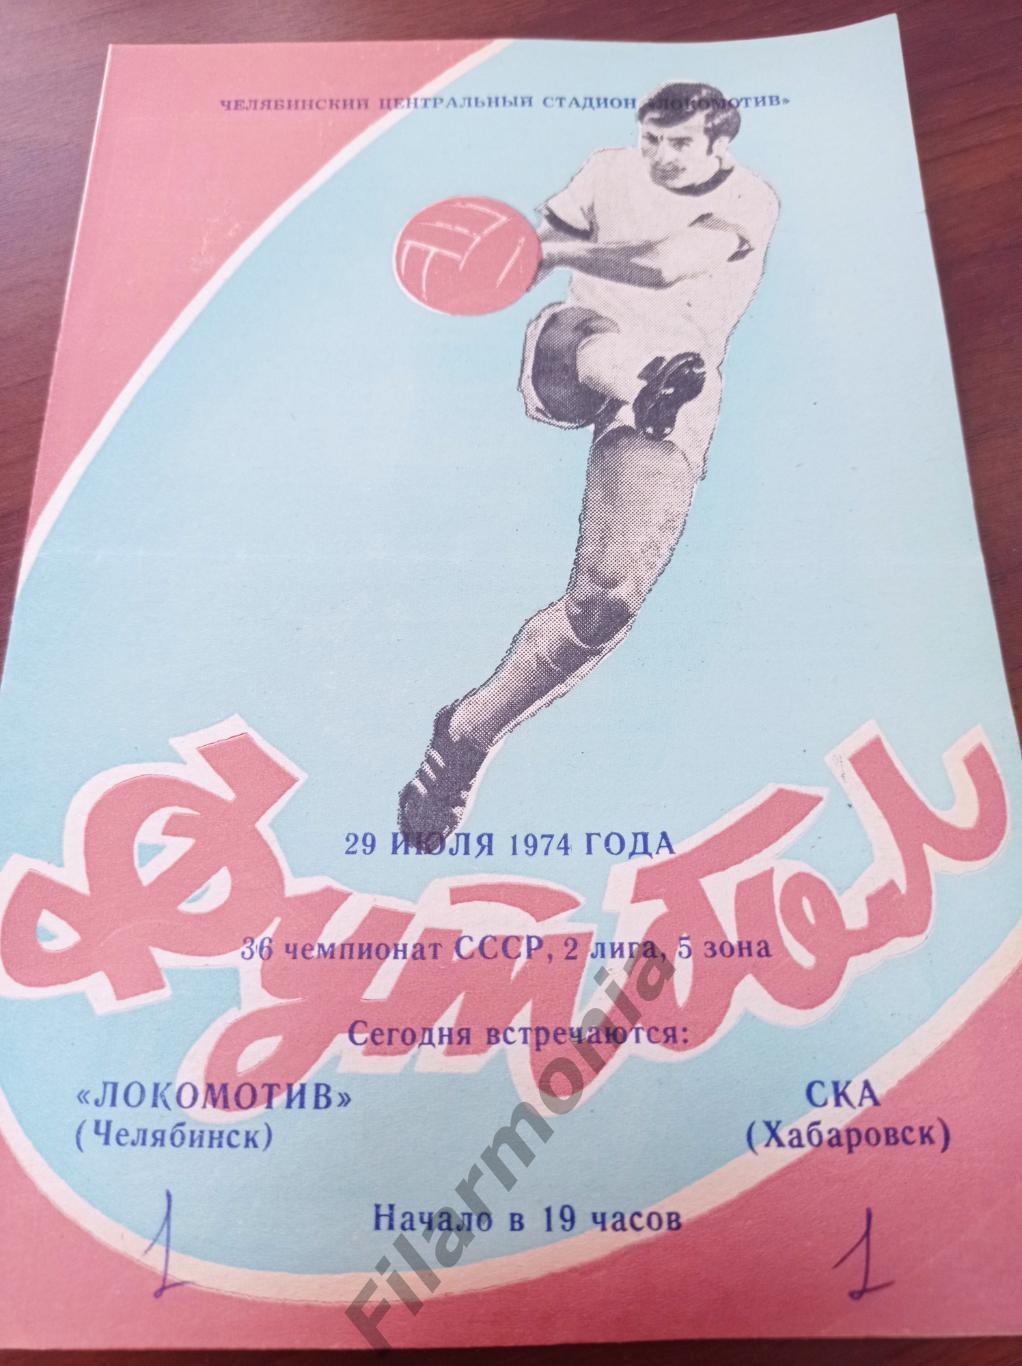 1974 Локомотив Челябинск - СКА Хабаровск